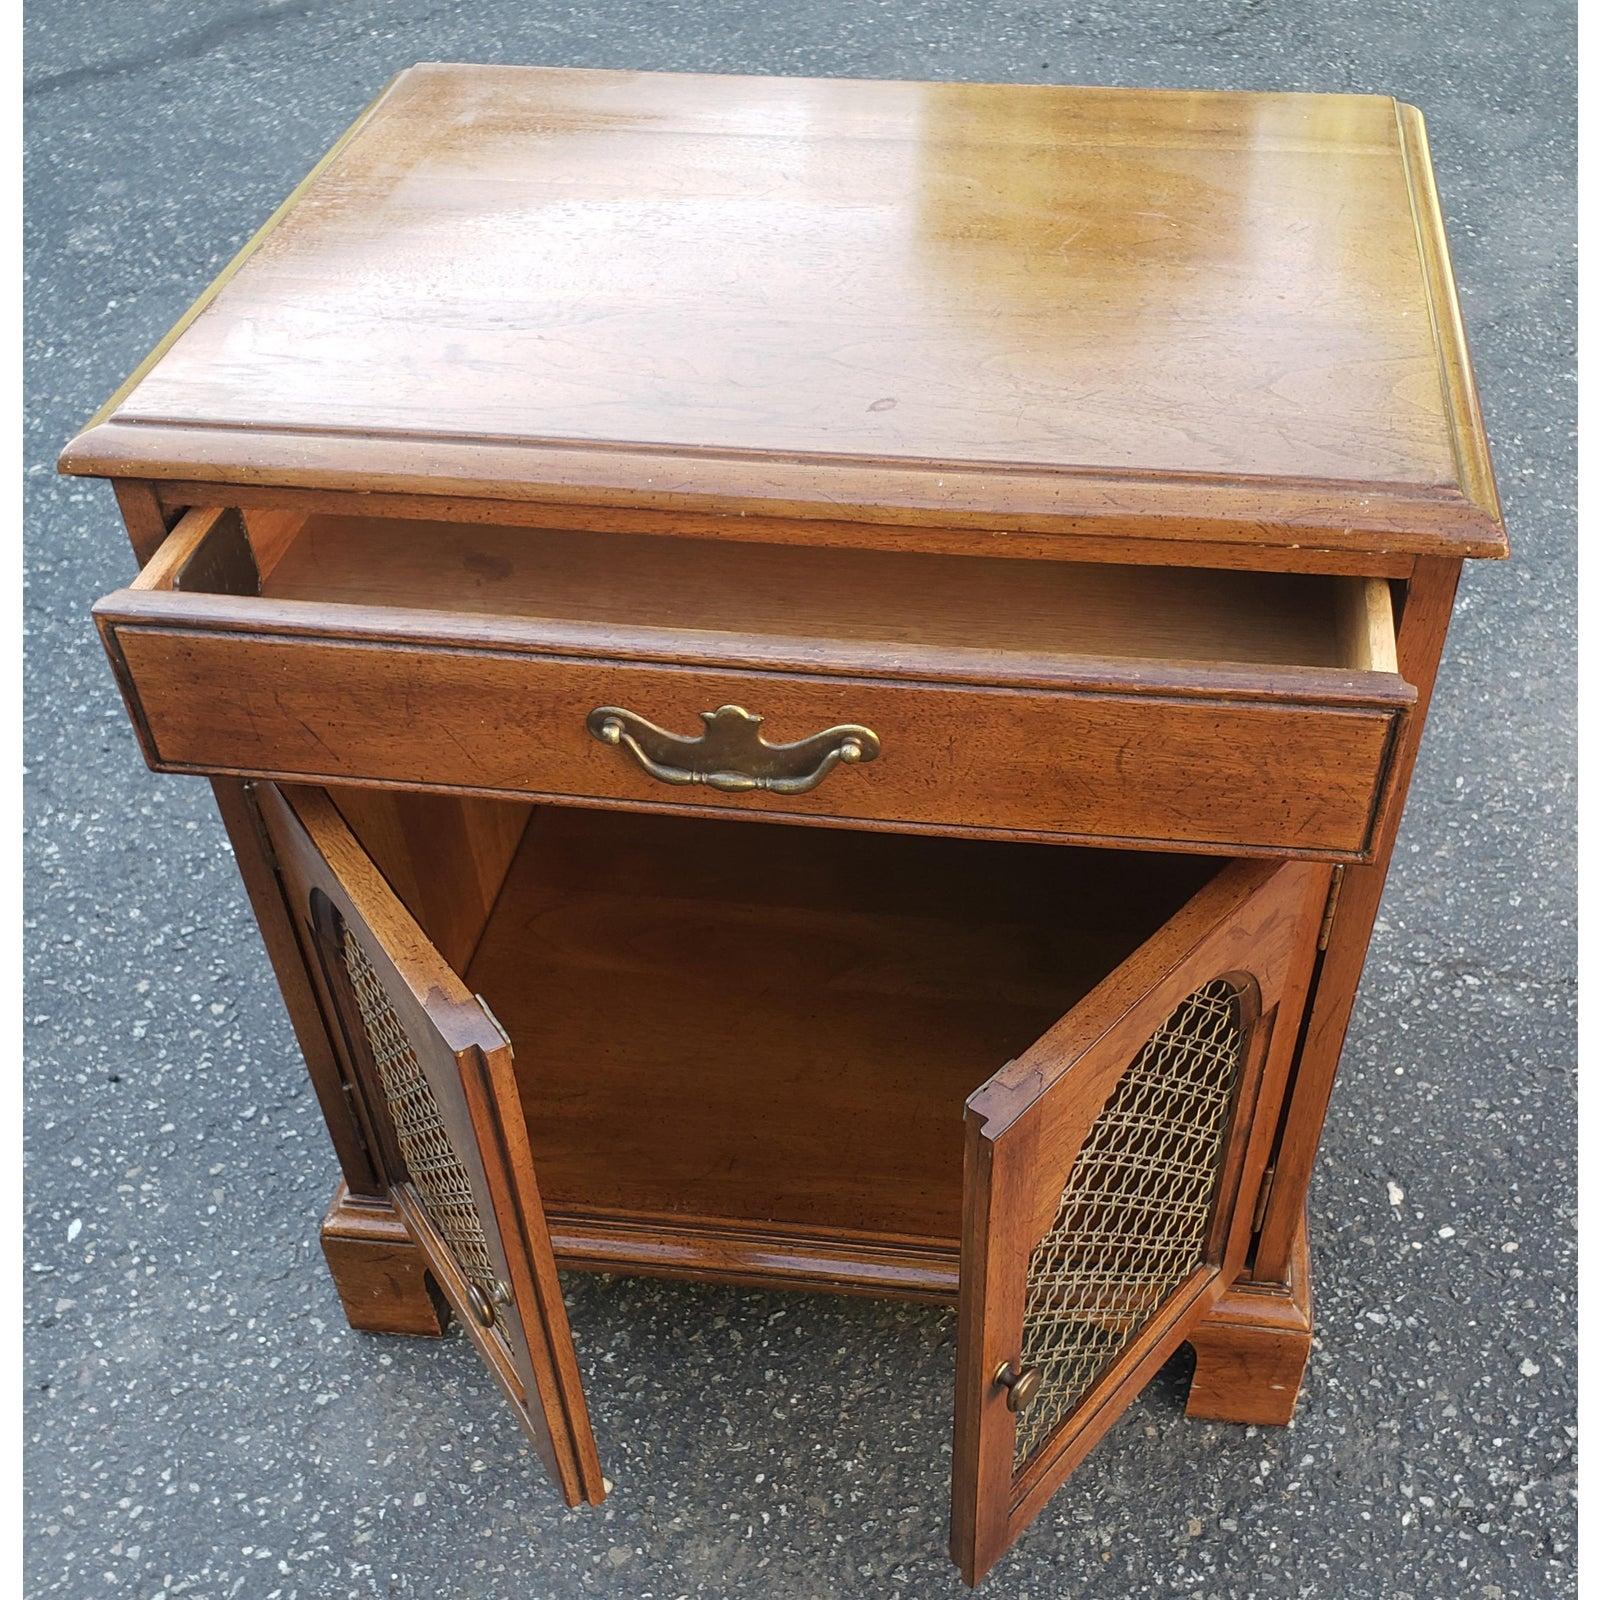 Vintage Davis Cabinet Co. Table de nuit, table d'appoint, armoire en noyer massif. Très robuste et en excellent état.